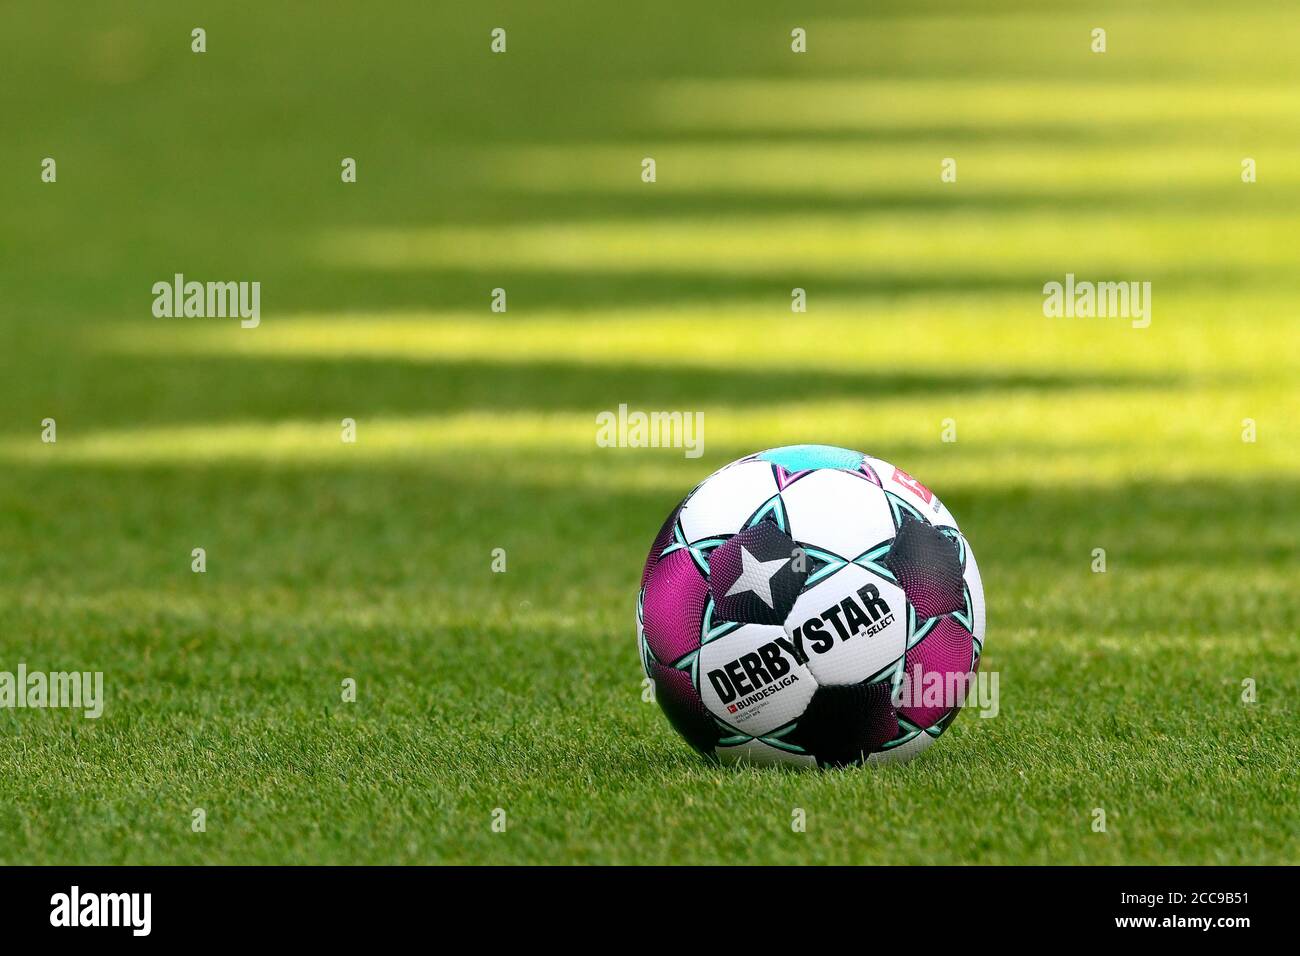 Der offizielle Ligaball von Derbystar für die deutsche 1. Bundesliga. Stockfoto